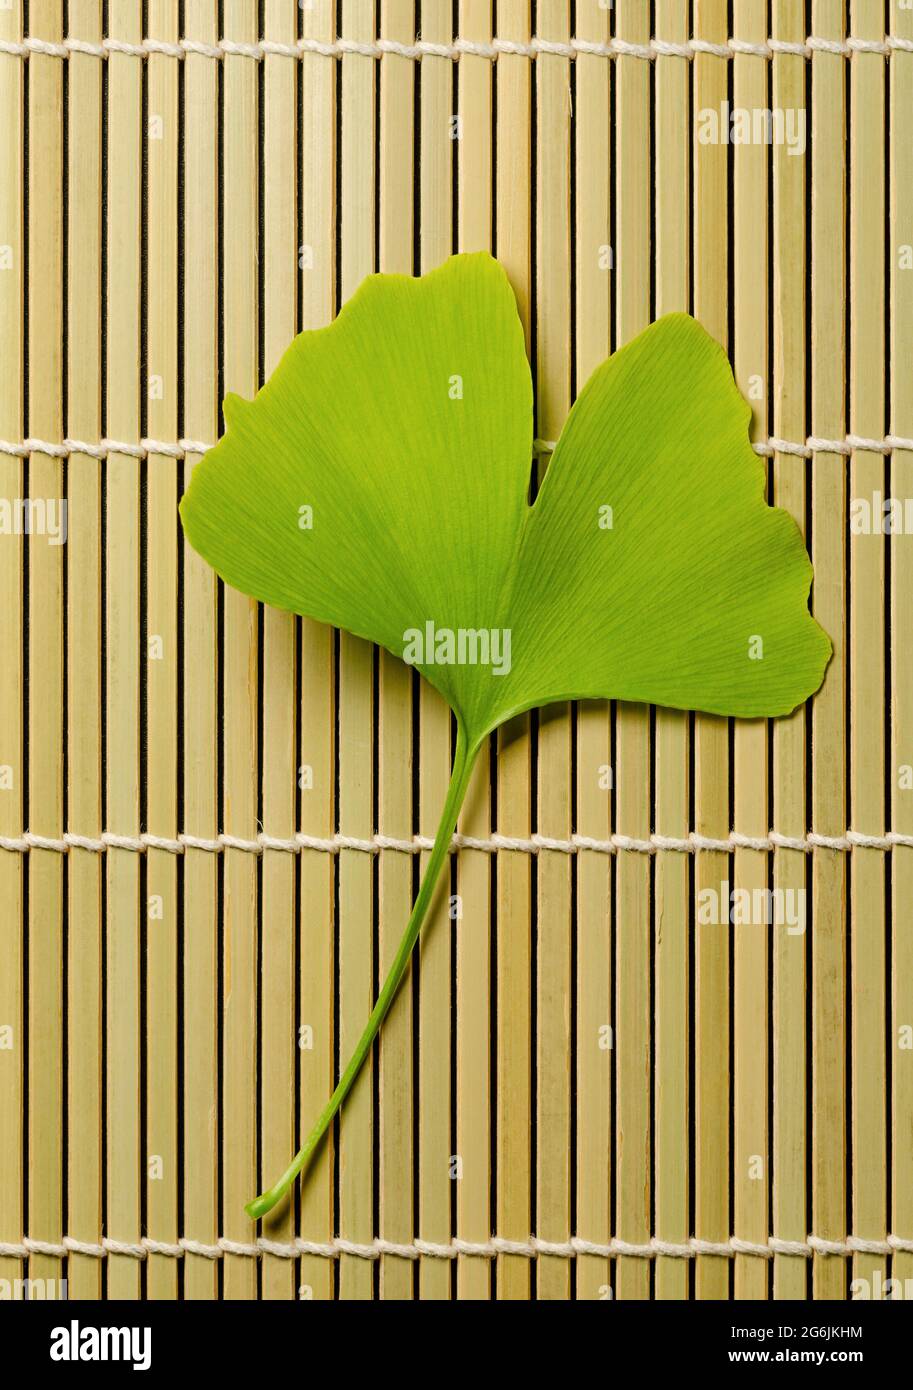 Einzelnes Ginkgo-Blatt auf einer Bambusmatte. Ginkgo biloba, auch bekannt als Gingko- oder Maidenhair-Baum, offizieller Baum der japanischen Hauptstadt Tokio. Stockfoto